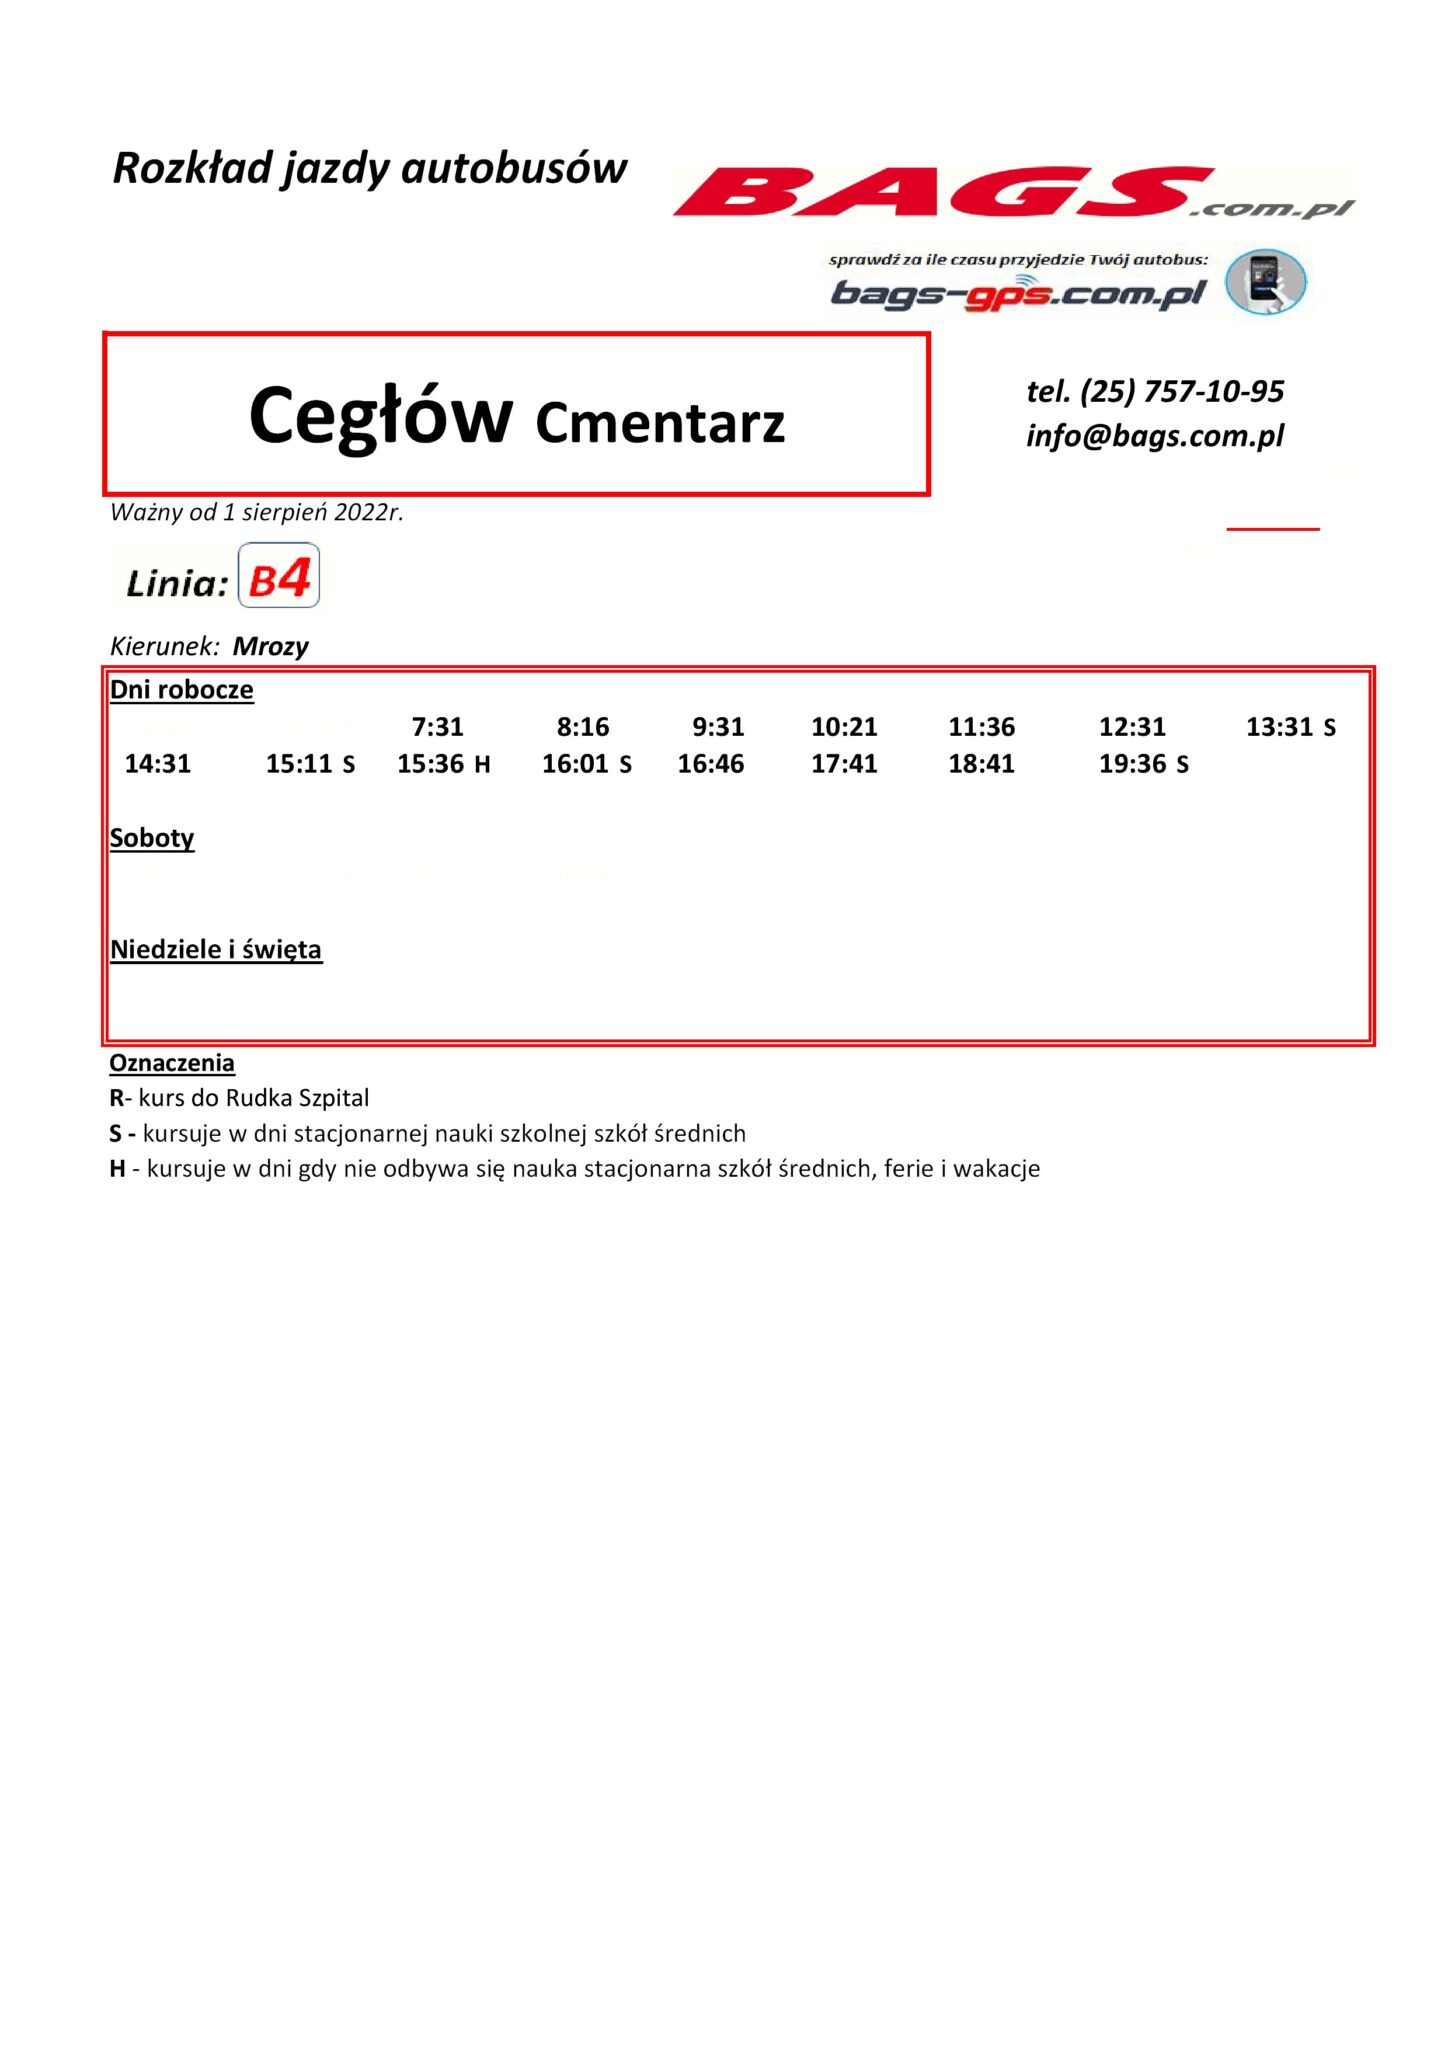 Ceglow-Cmentarz-1-1-1448x2048